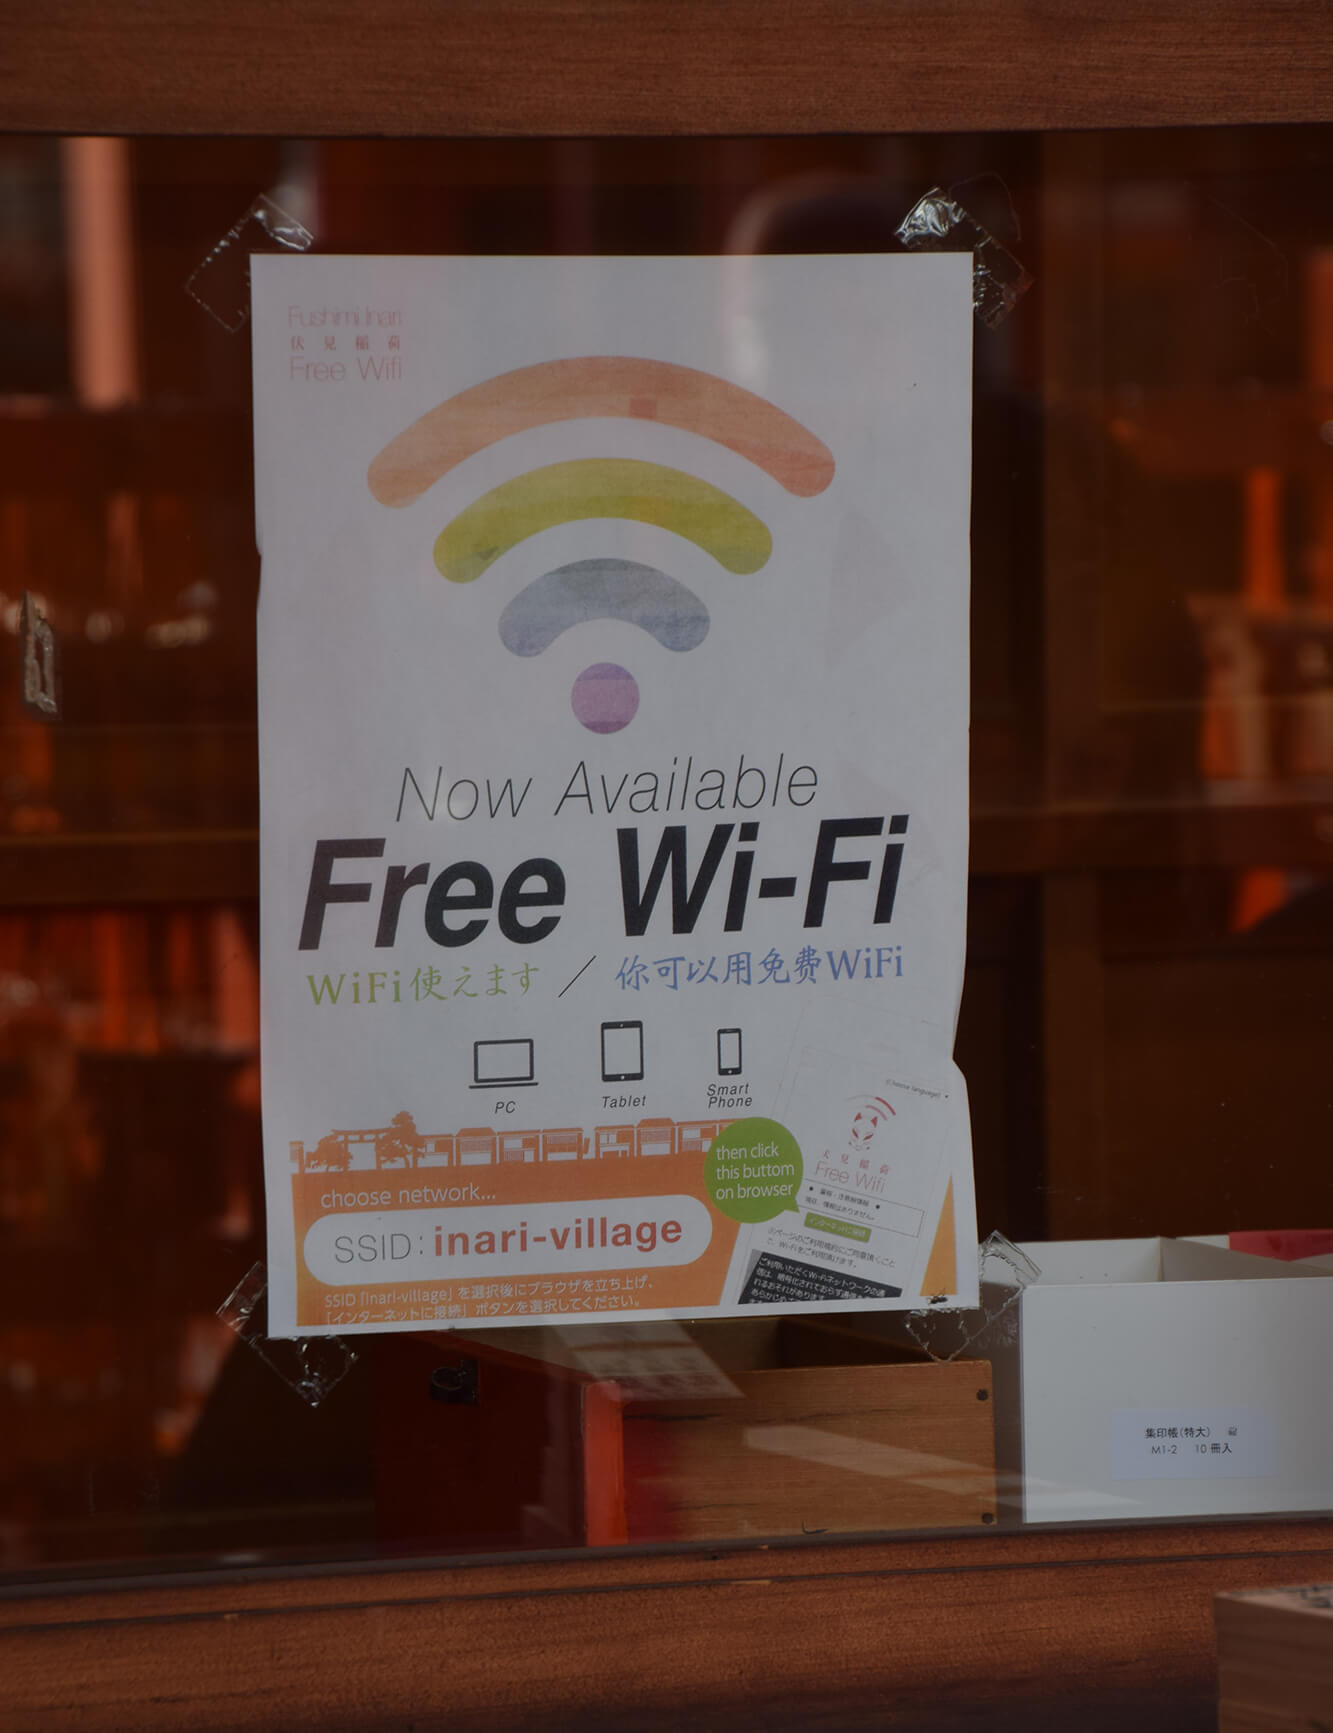 Free WiFi